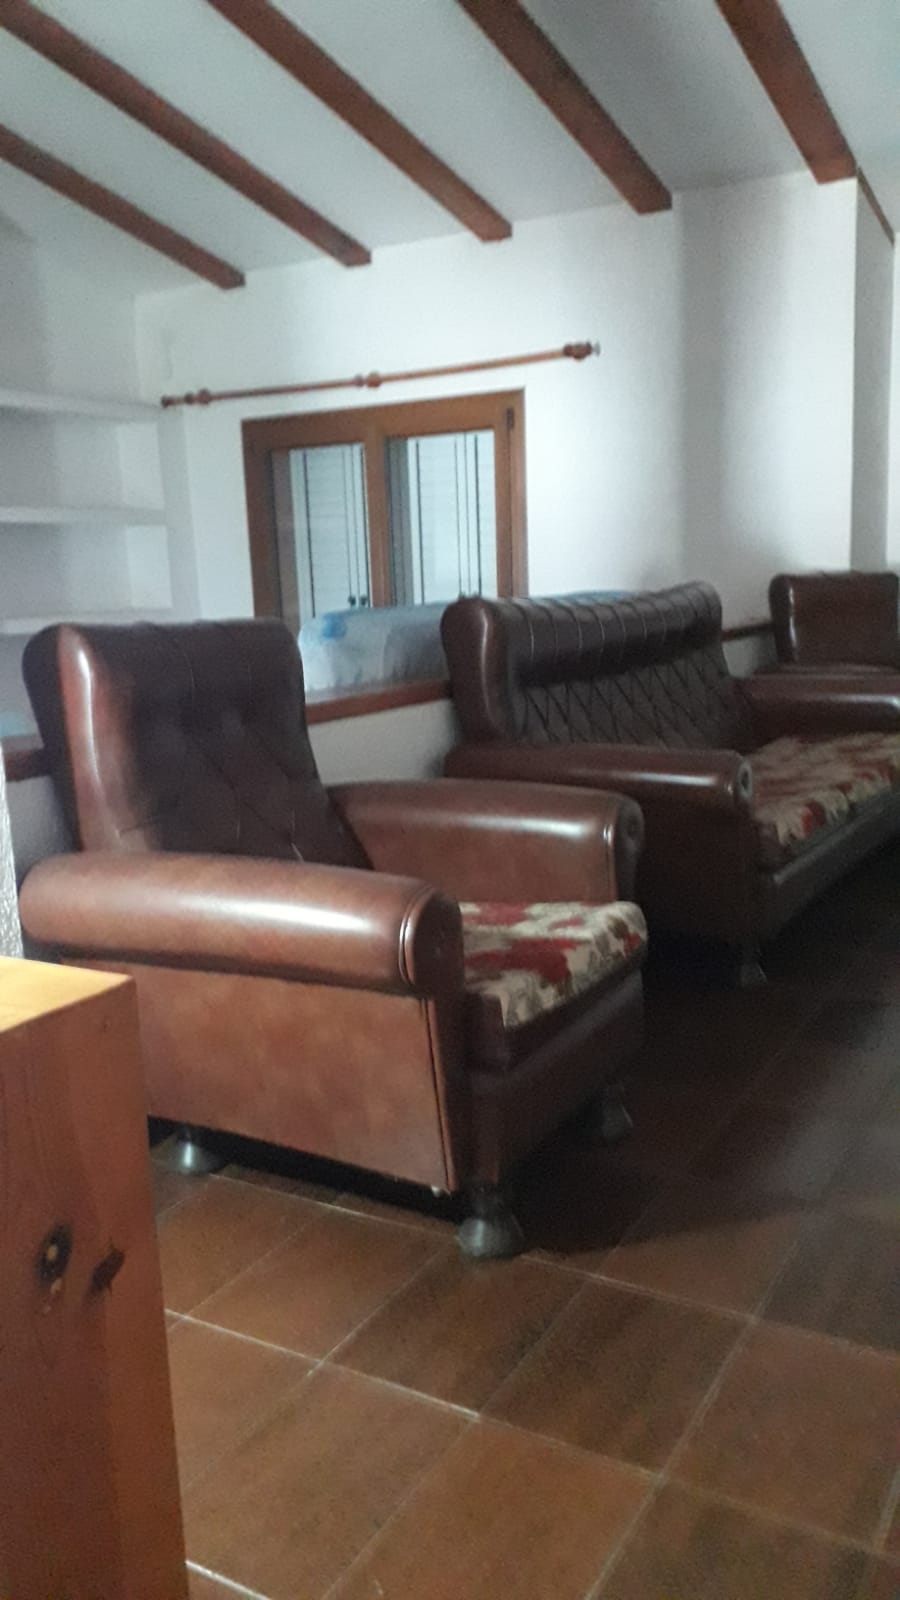 Empresa de vaciado de pisos y recogida de muebles en Vilabella | Servicio de calidad a un precio justo